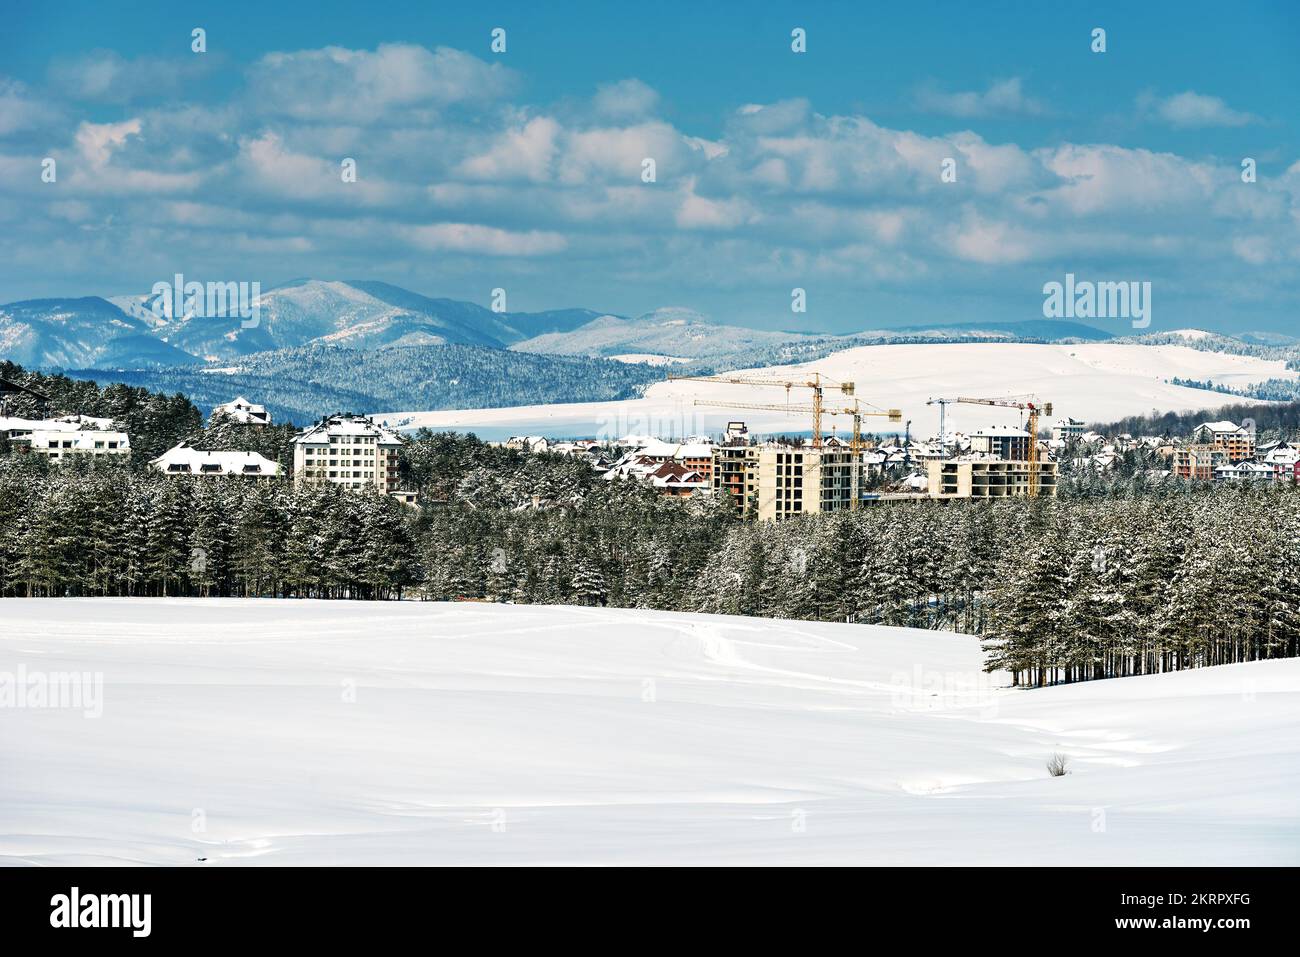 Bauindustrie Wohnung und Wohnungsbau in Zlatibor in der Wintersaison unter Schnee, Gebäude und Kraniche übernehmen die Kiefernwälder Land Stockfoto